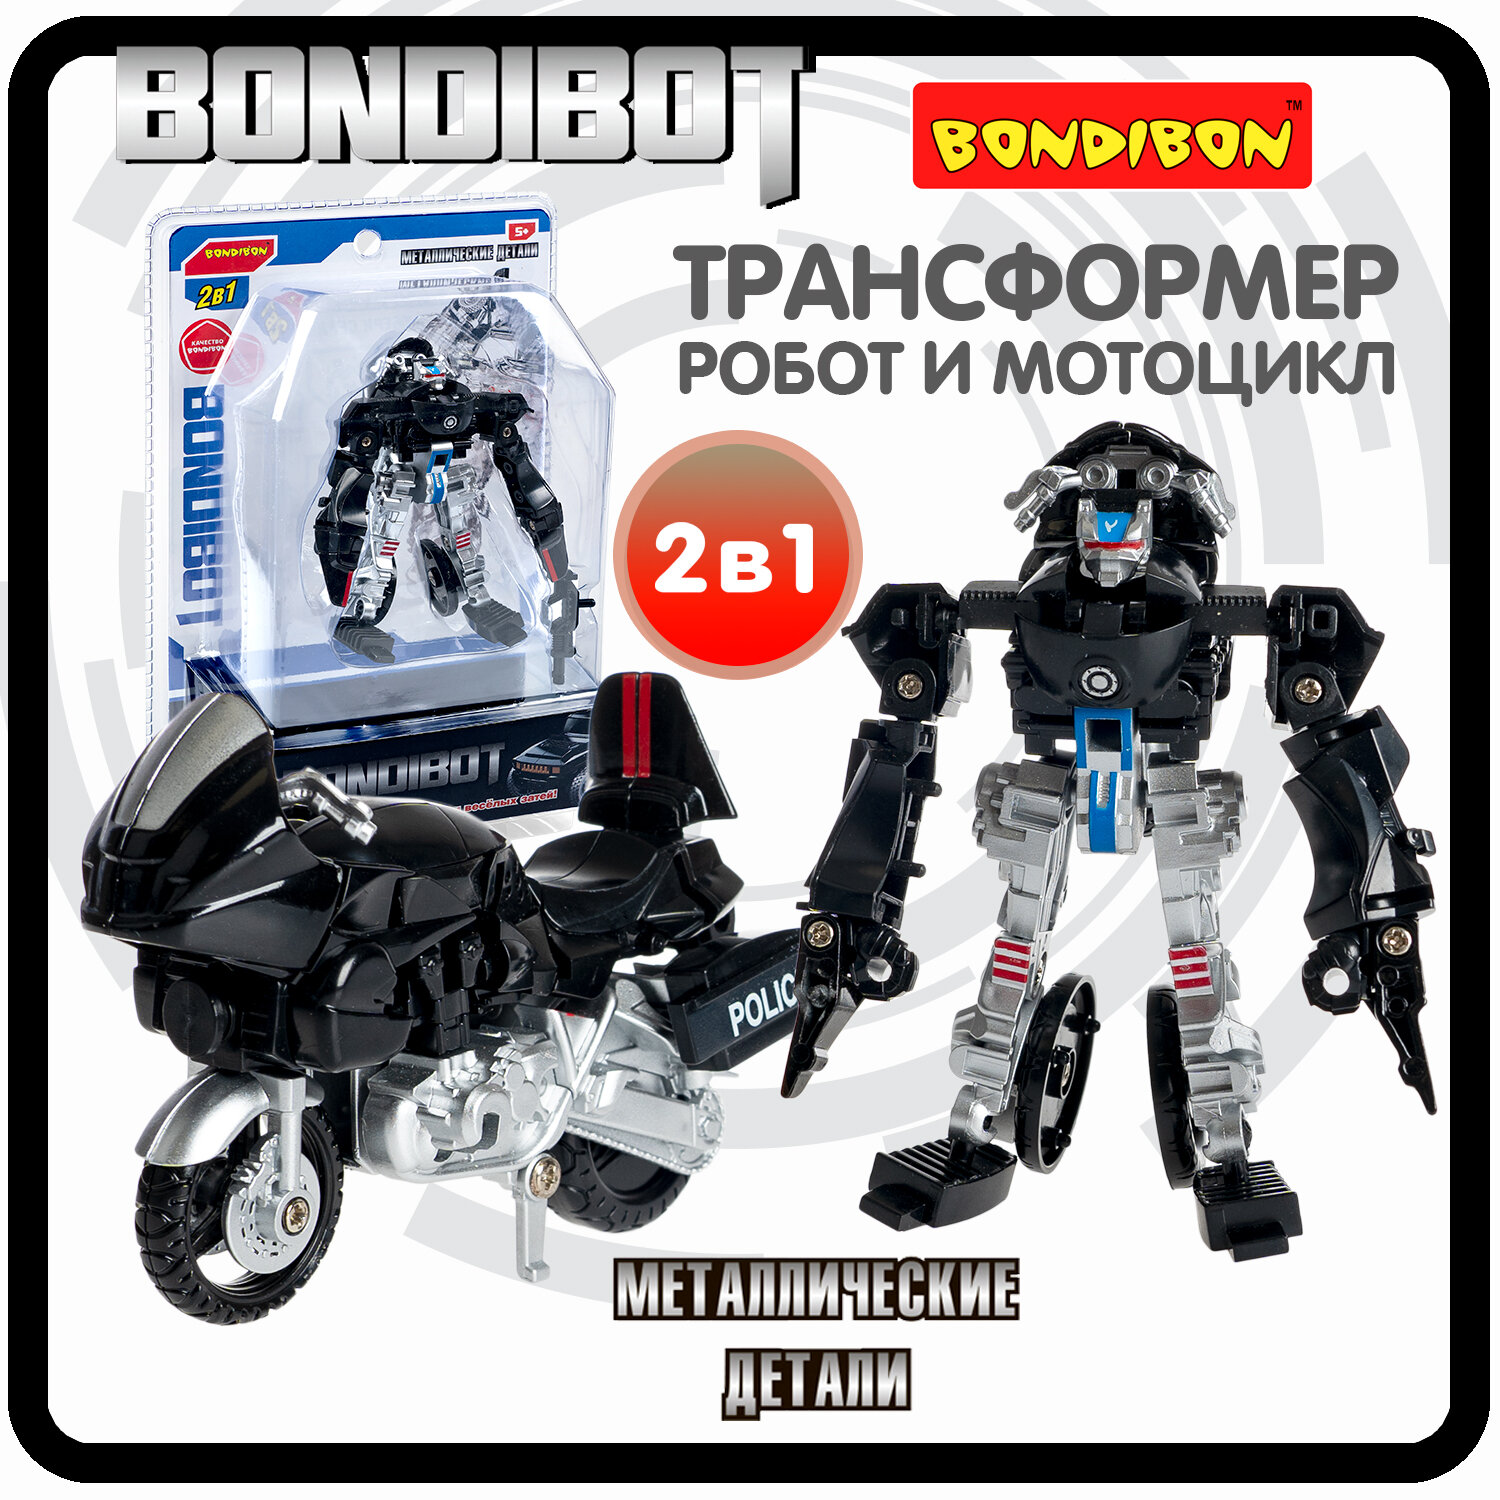 Трансформер робот-мотоцикл, метал. детали, 2в1 BONDIBOT Bondibon, цвет чёрный, CRD 13,5х19х6,7см